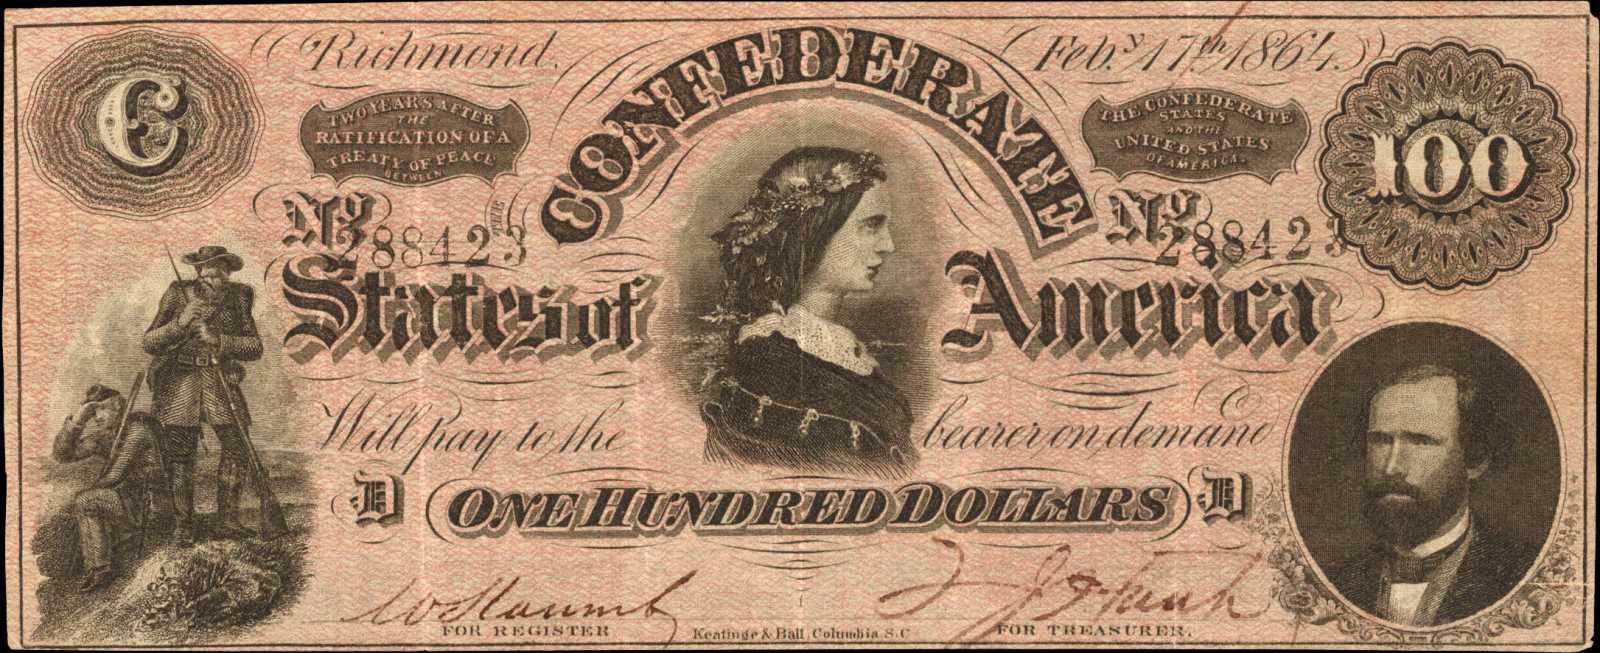 Dollar Bill Value Chart